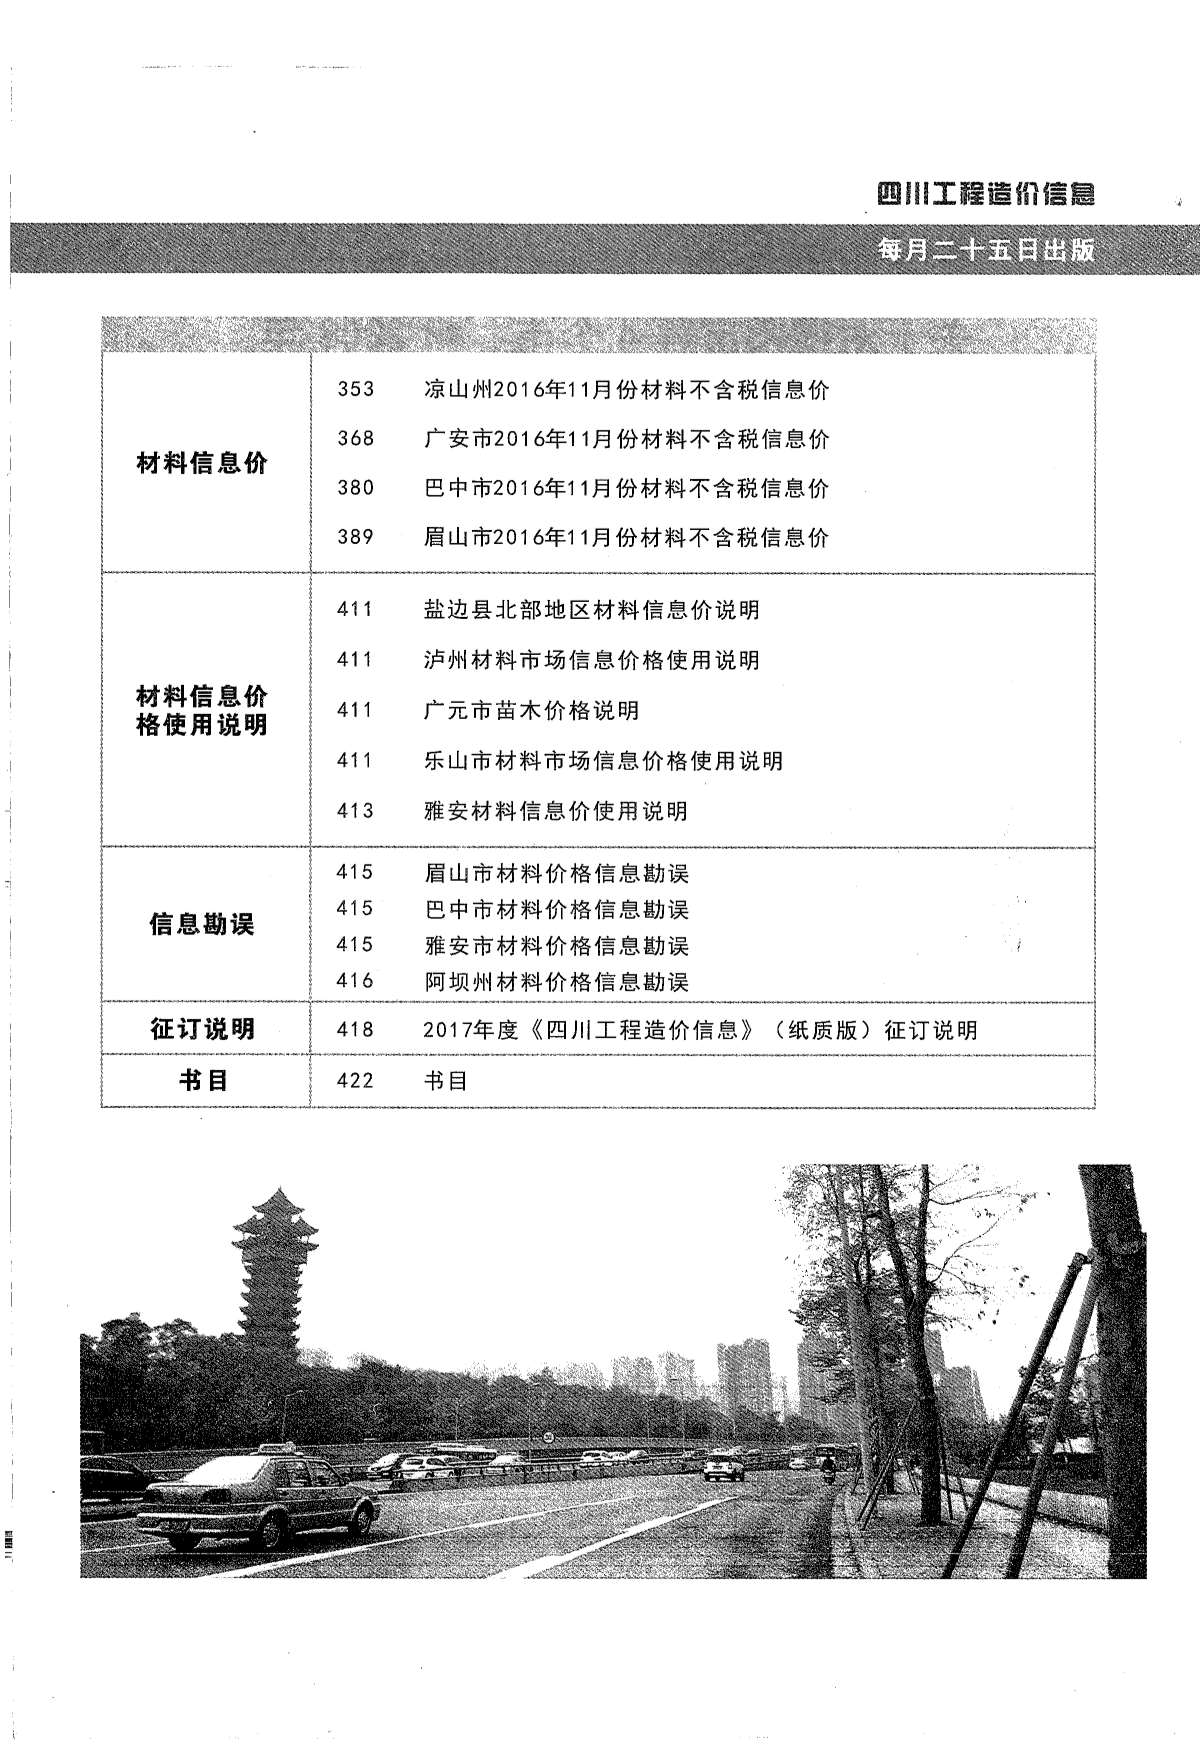 四川省2016年12月工程信息价_四川省信息价期刊PDF扫描件电子版